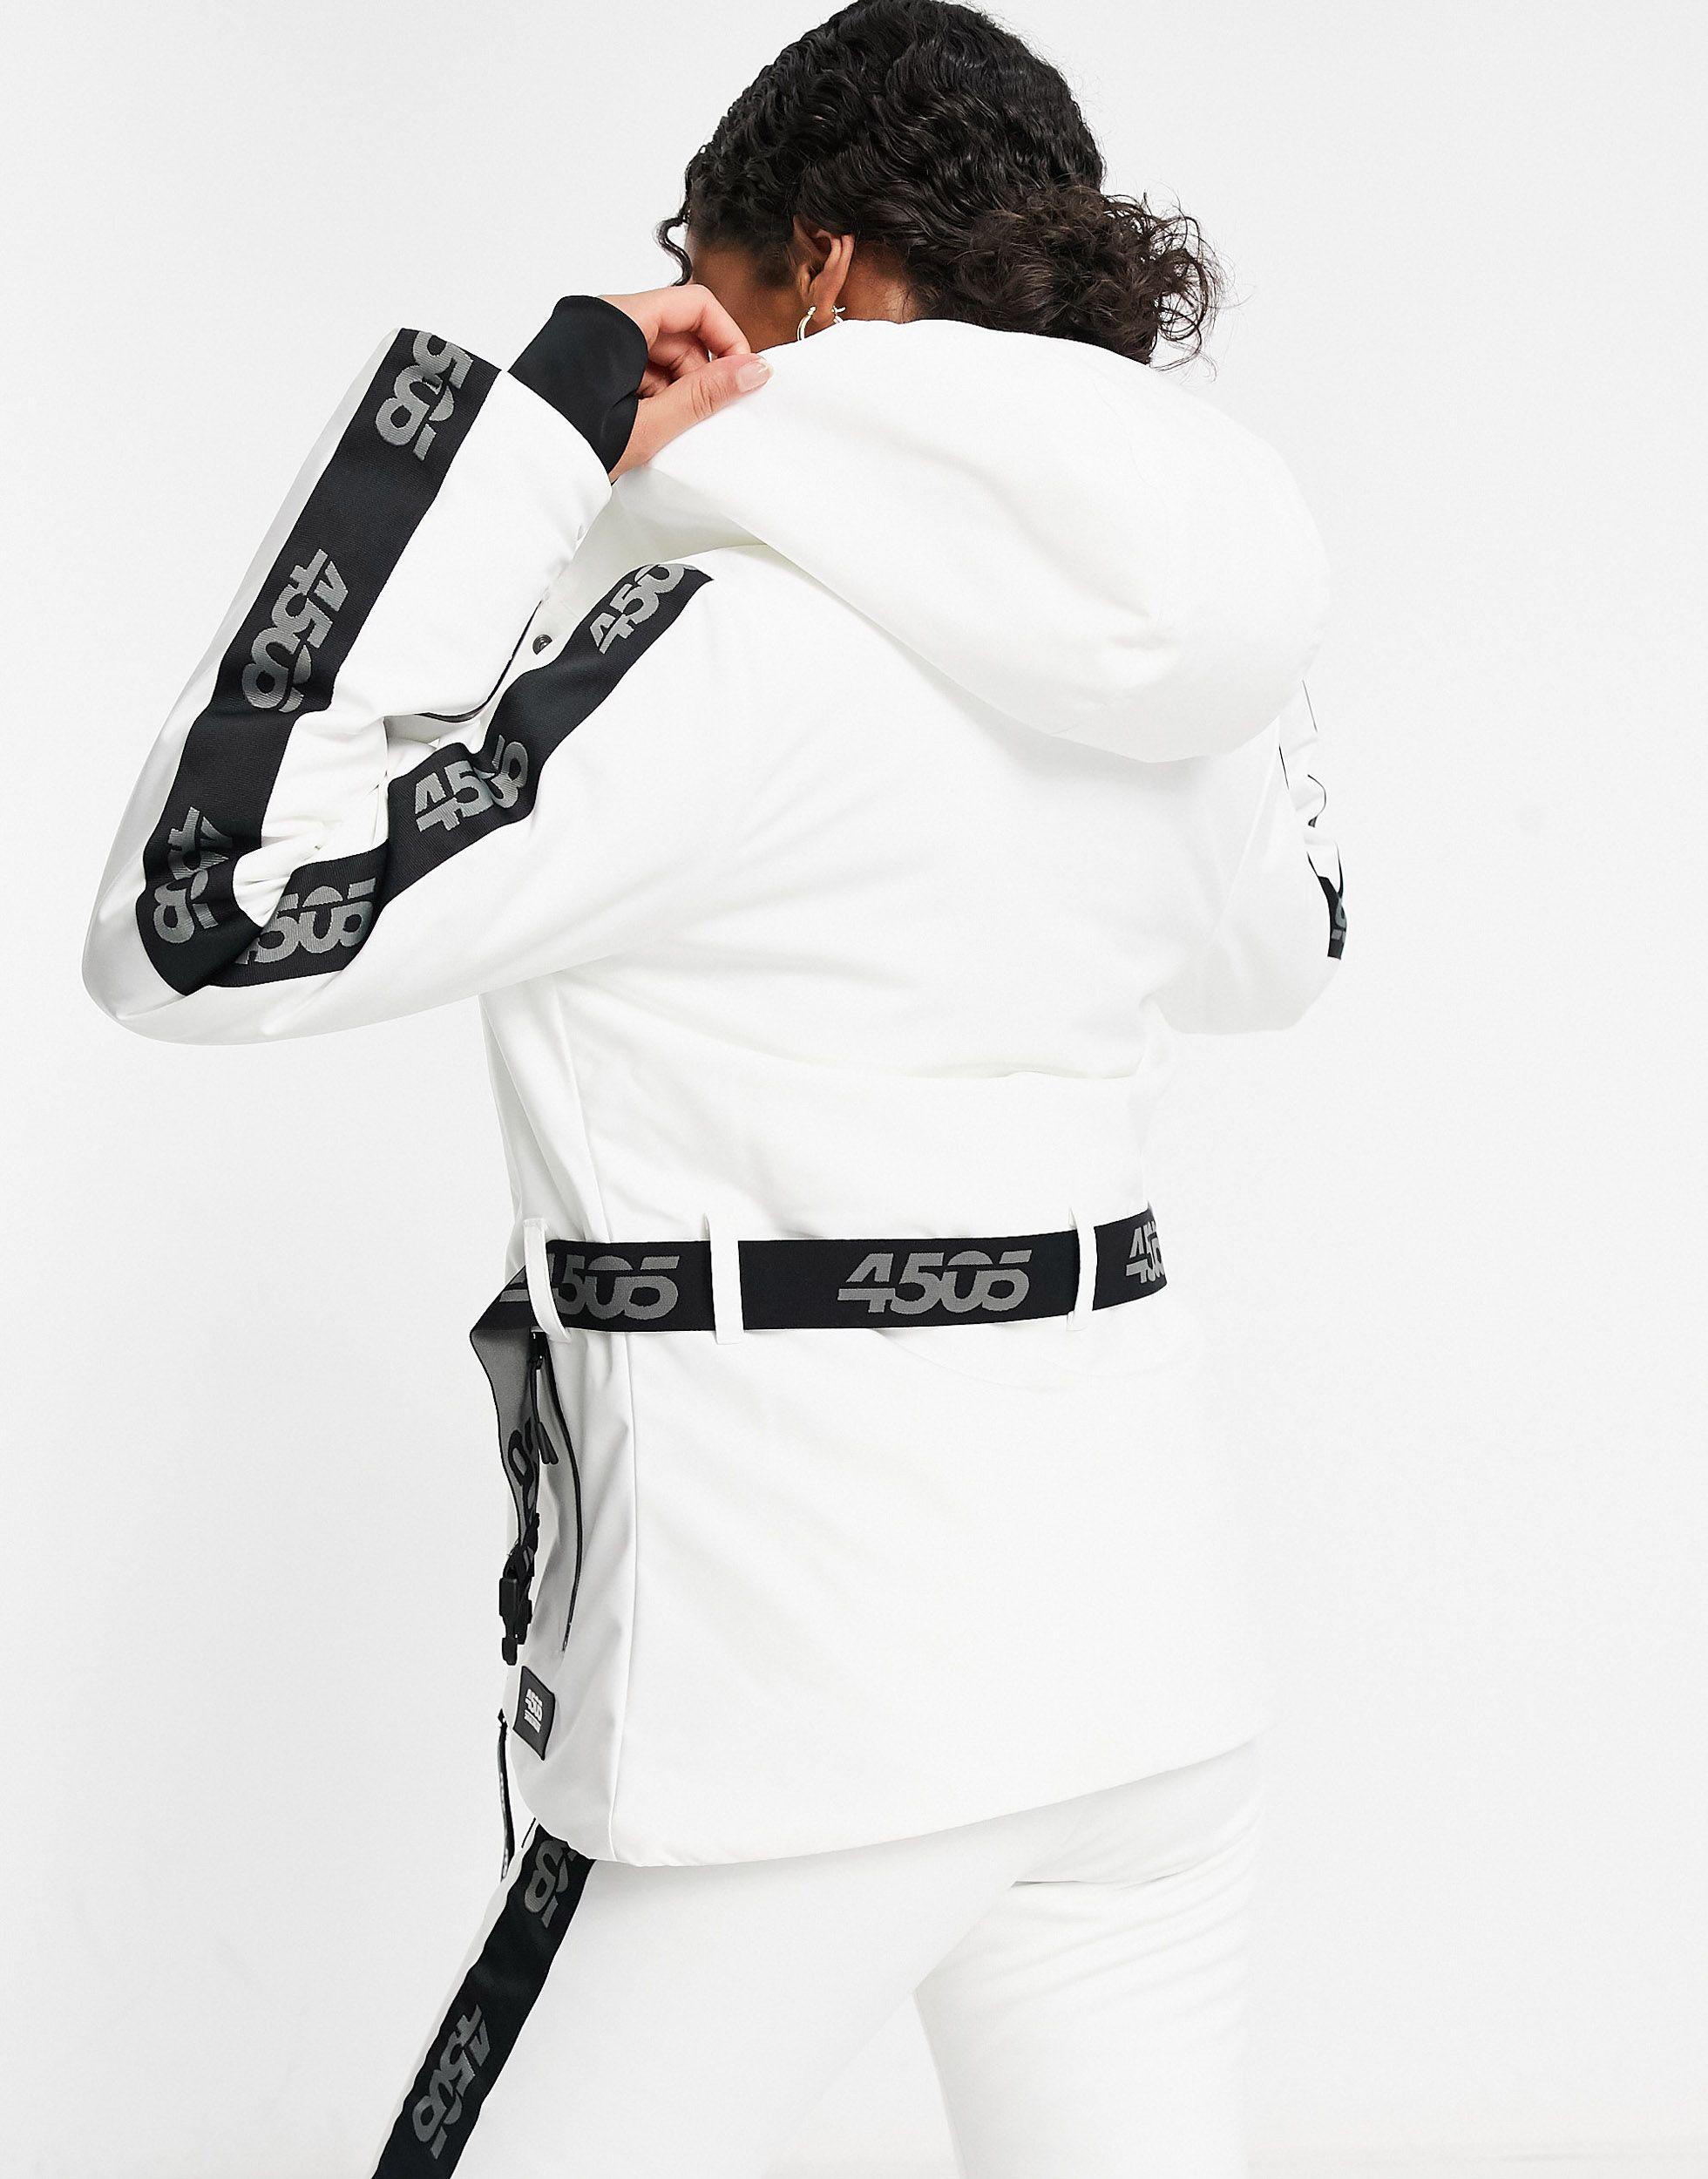 ASOS 4505 Ski Belted Ski Jacket With Logo Detail in White | Lyst